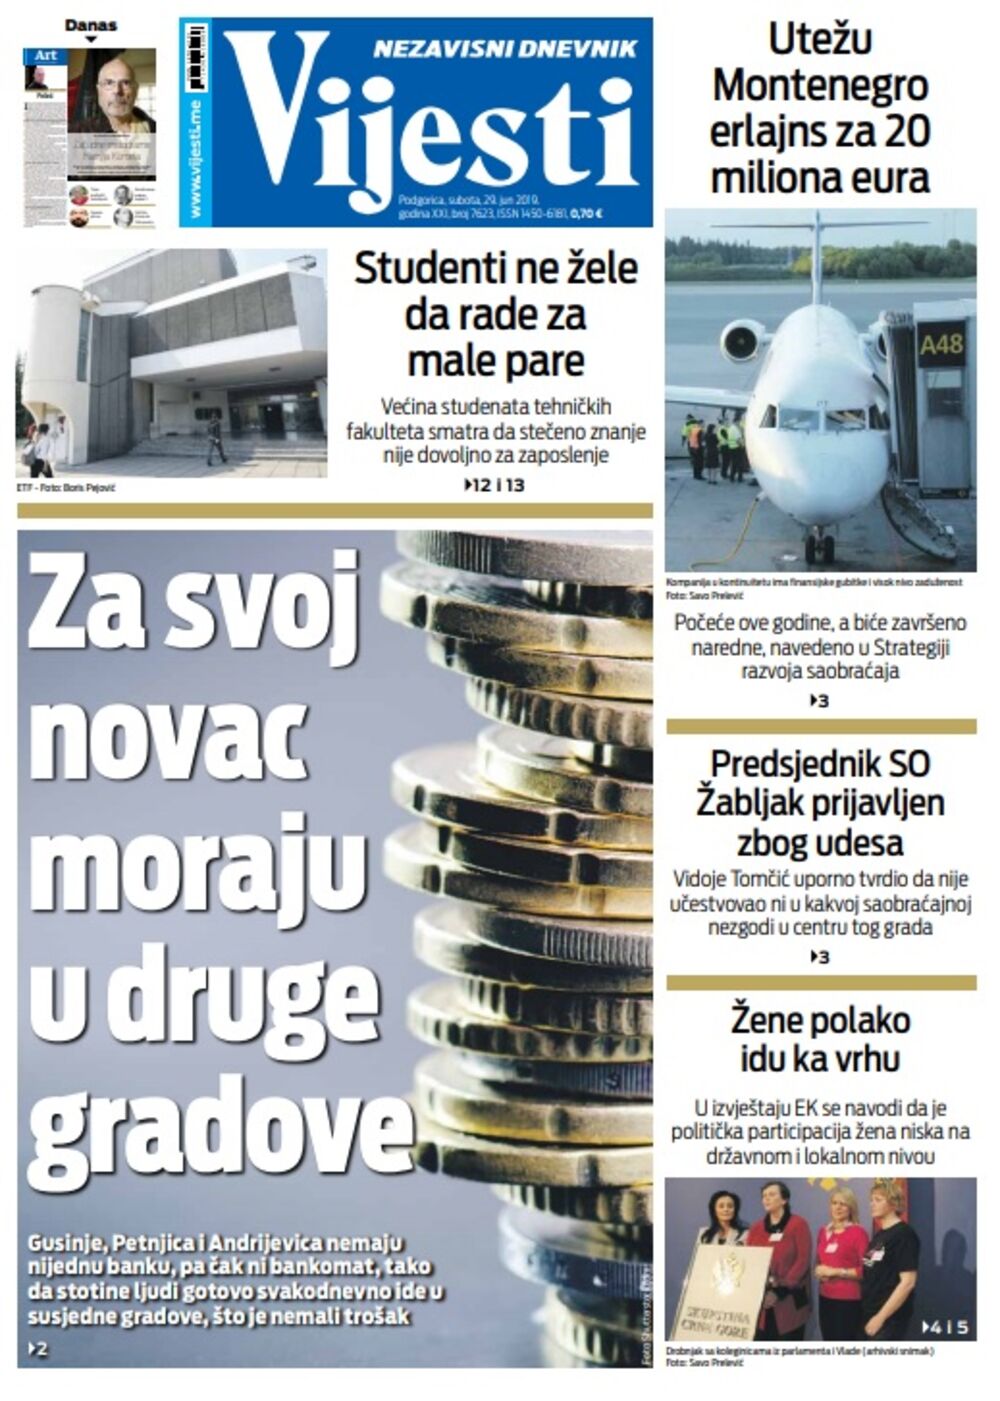 Naslovna 29. jun, Foto: Vijesti